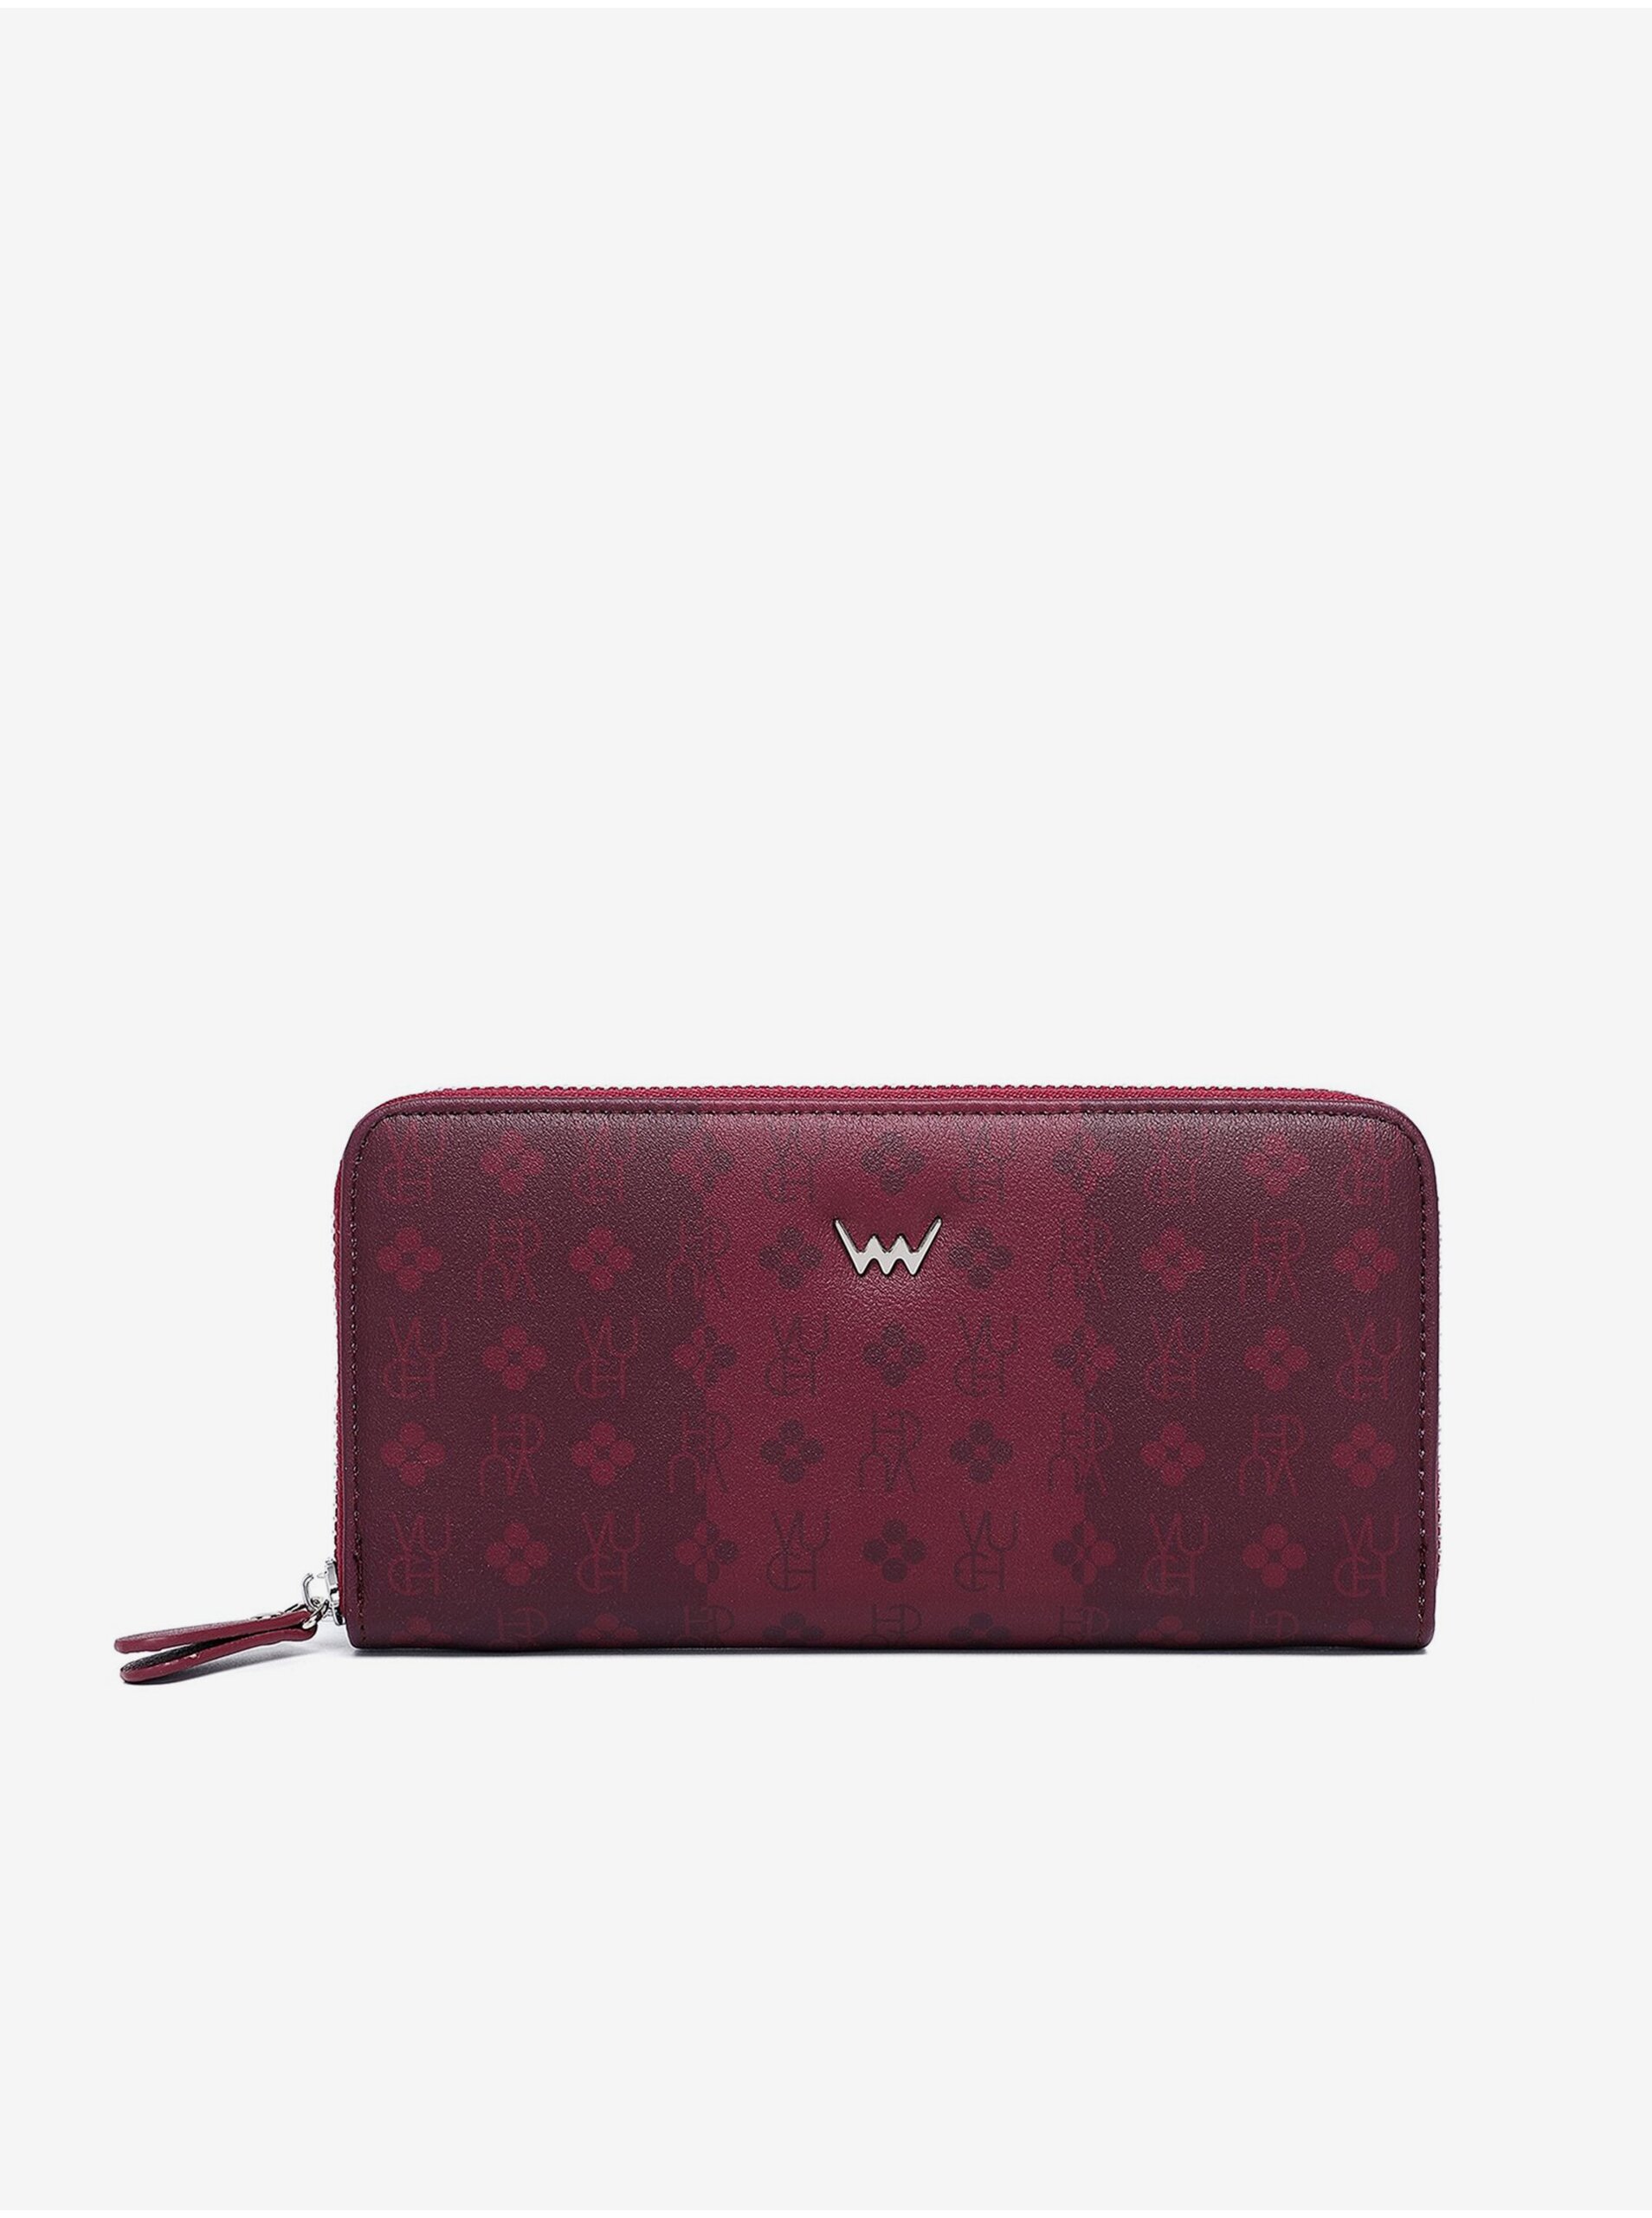 E-shop Vínová dámska vzorovaná peňaženka VUCH Marva Wine